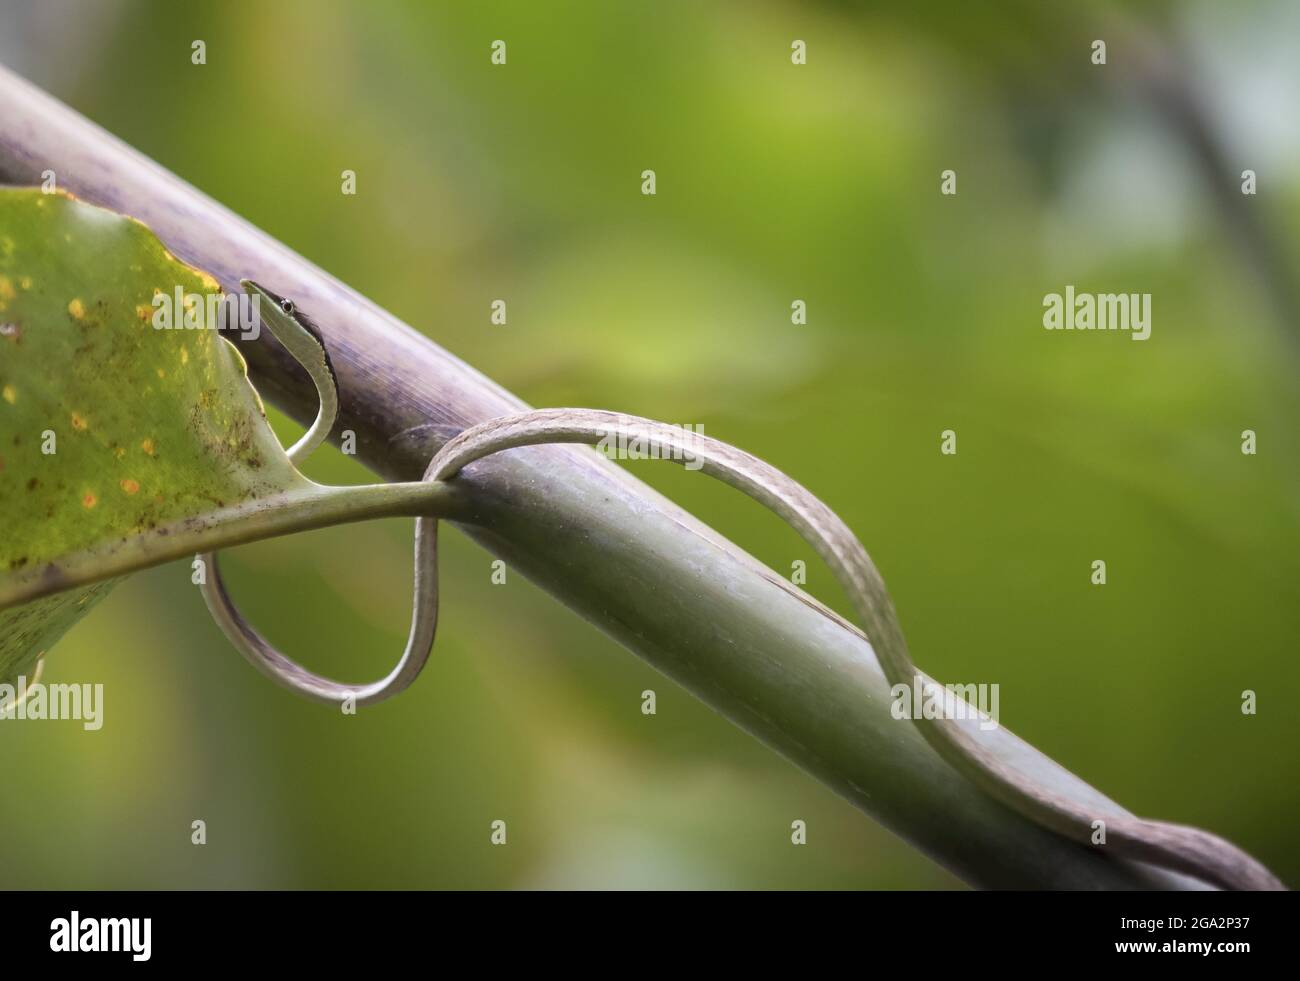 Eine braune Weinschlange (Oxybelis aeneus) schlängelt sich im Wald entlang eines Baumes; Puntarenas, Costa Rica Stockfoto